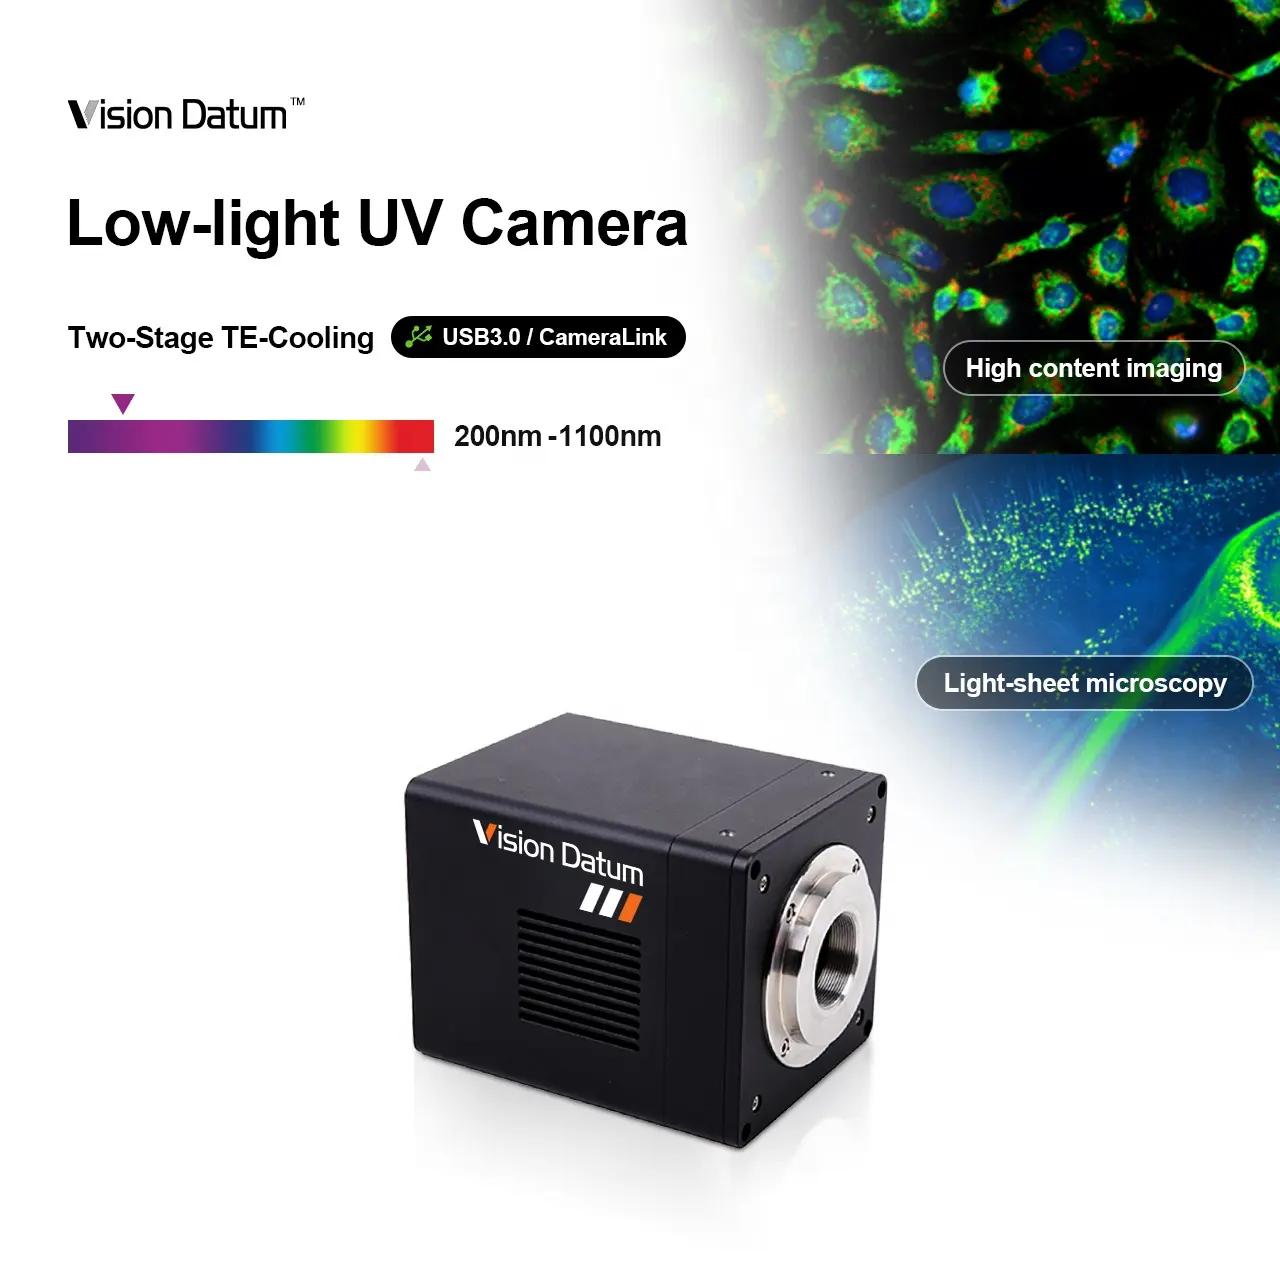 प्रतिदीप्ति छवि के लिए उच्च गुणवत्ता वाली छवियां मल्टीस्पेक्ट्रल ऑप्टिकल यूएसबी3 कैमरालिंक लो-लाइट यूवी औद्योगिक कैमरा मशीन विजन